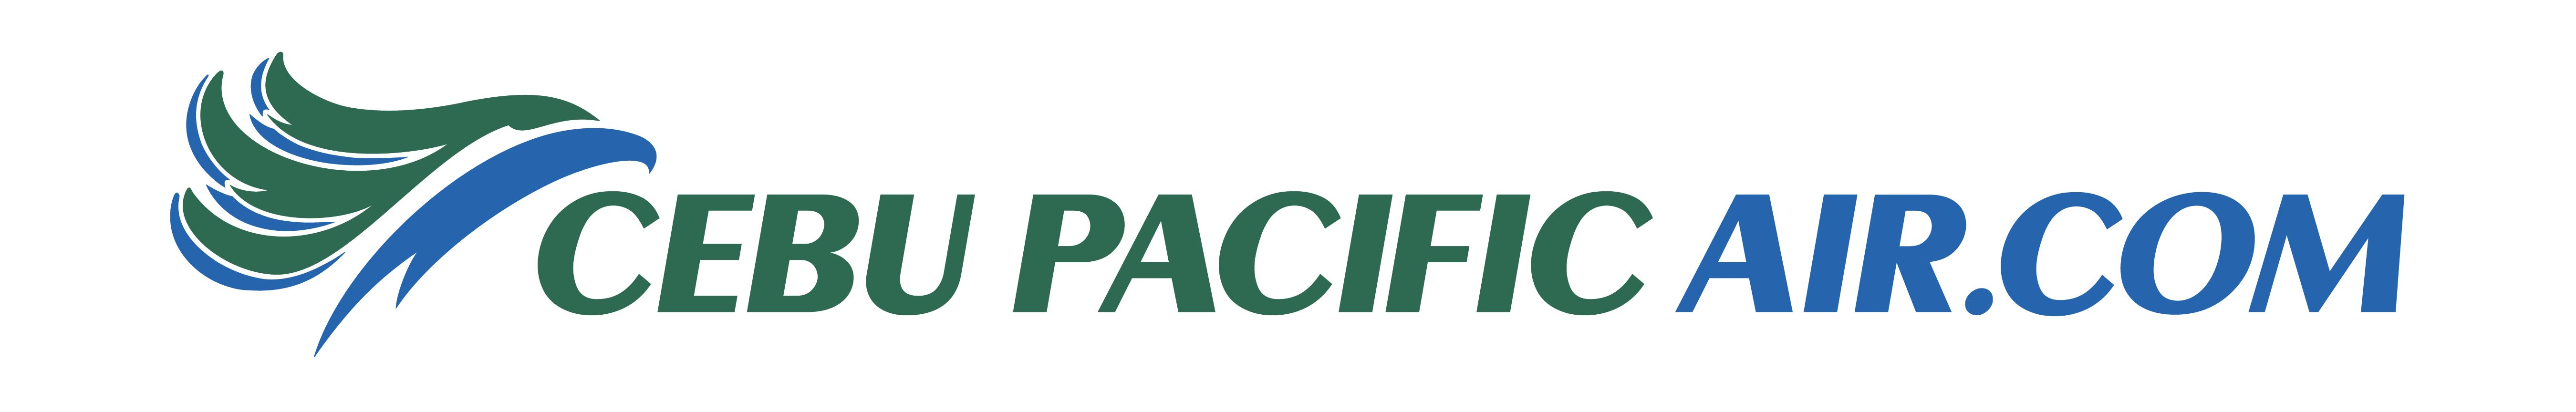 Cebu pacific aircom logo png 8 PNG Image